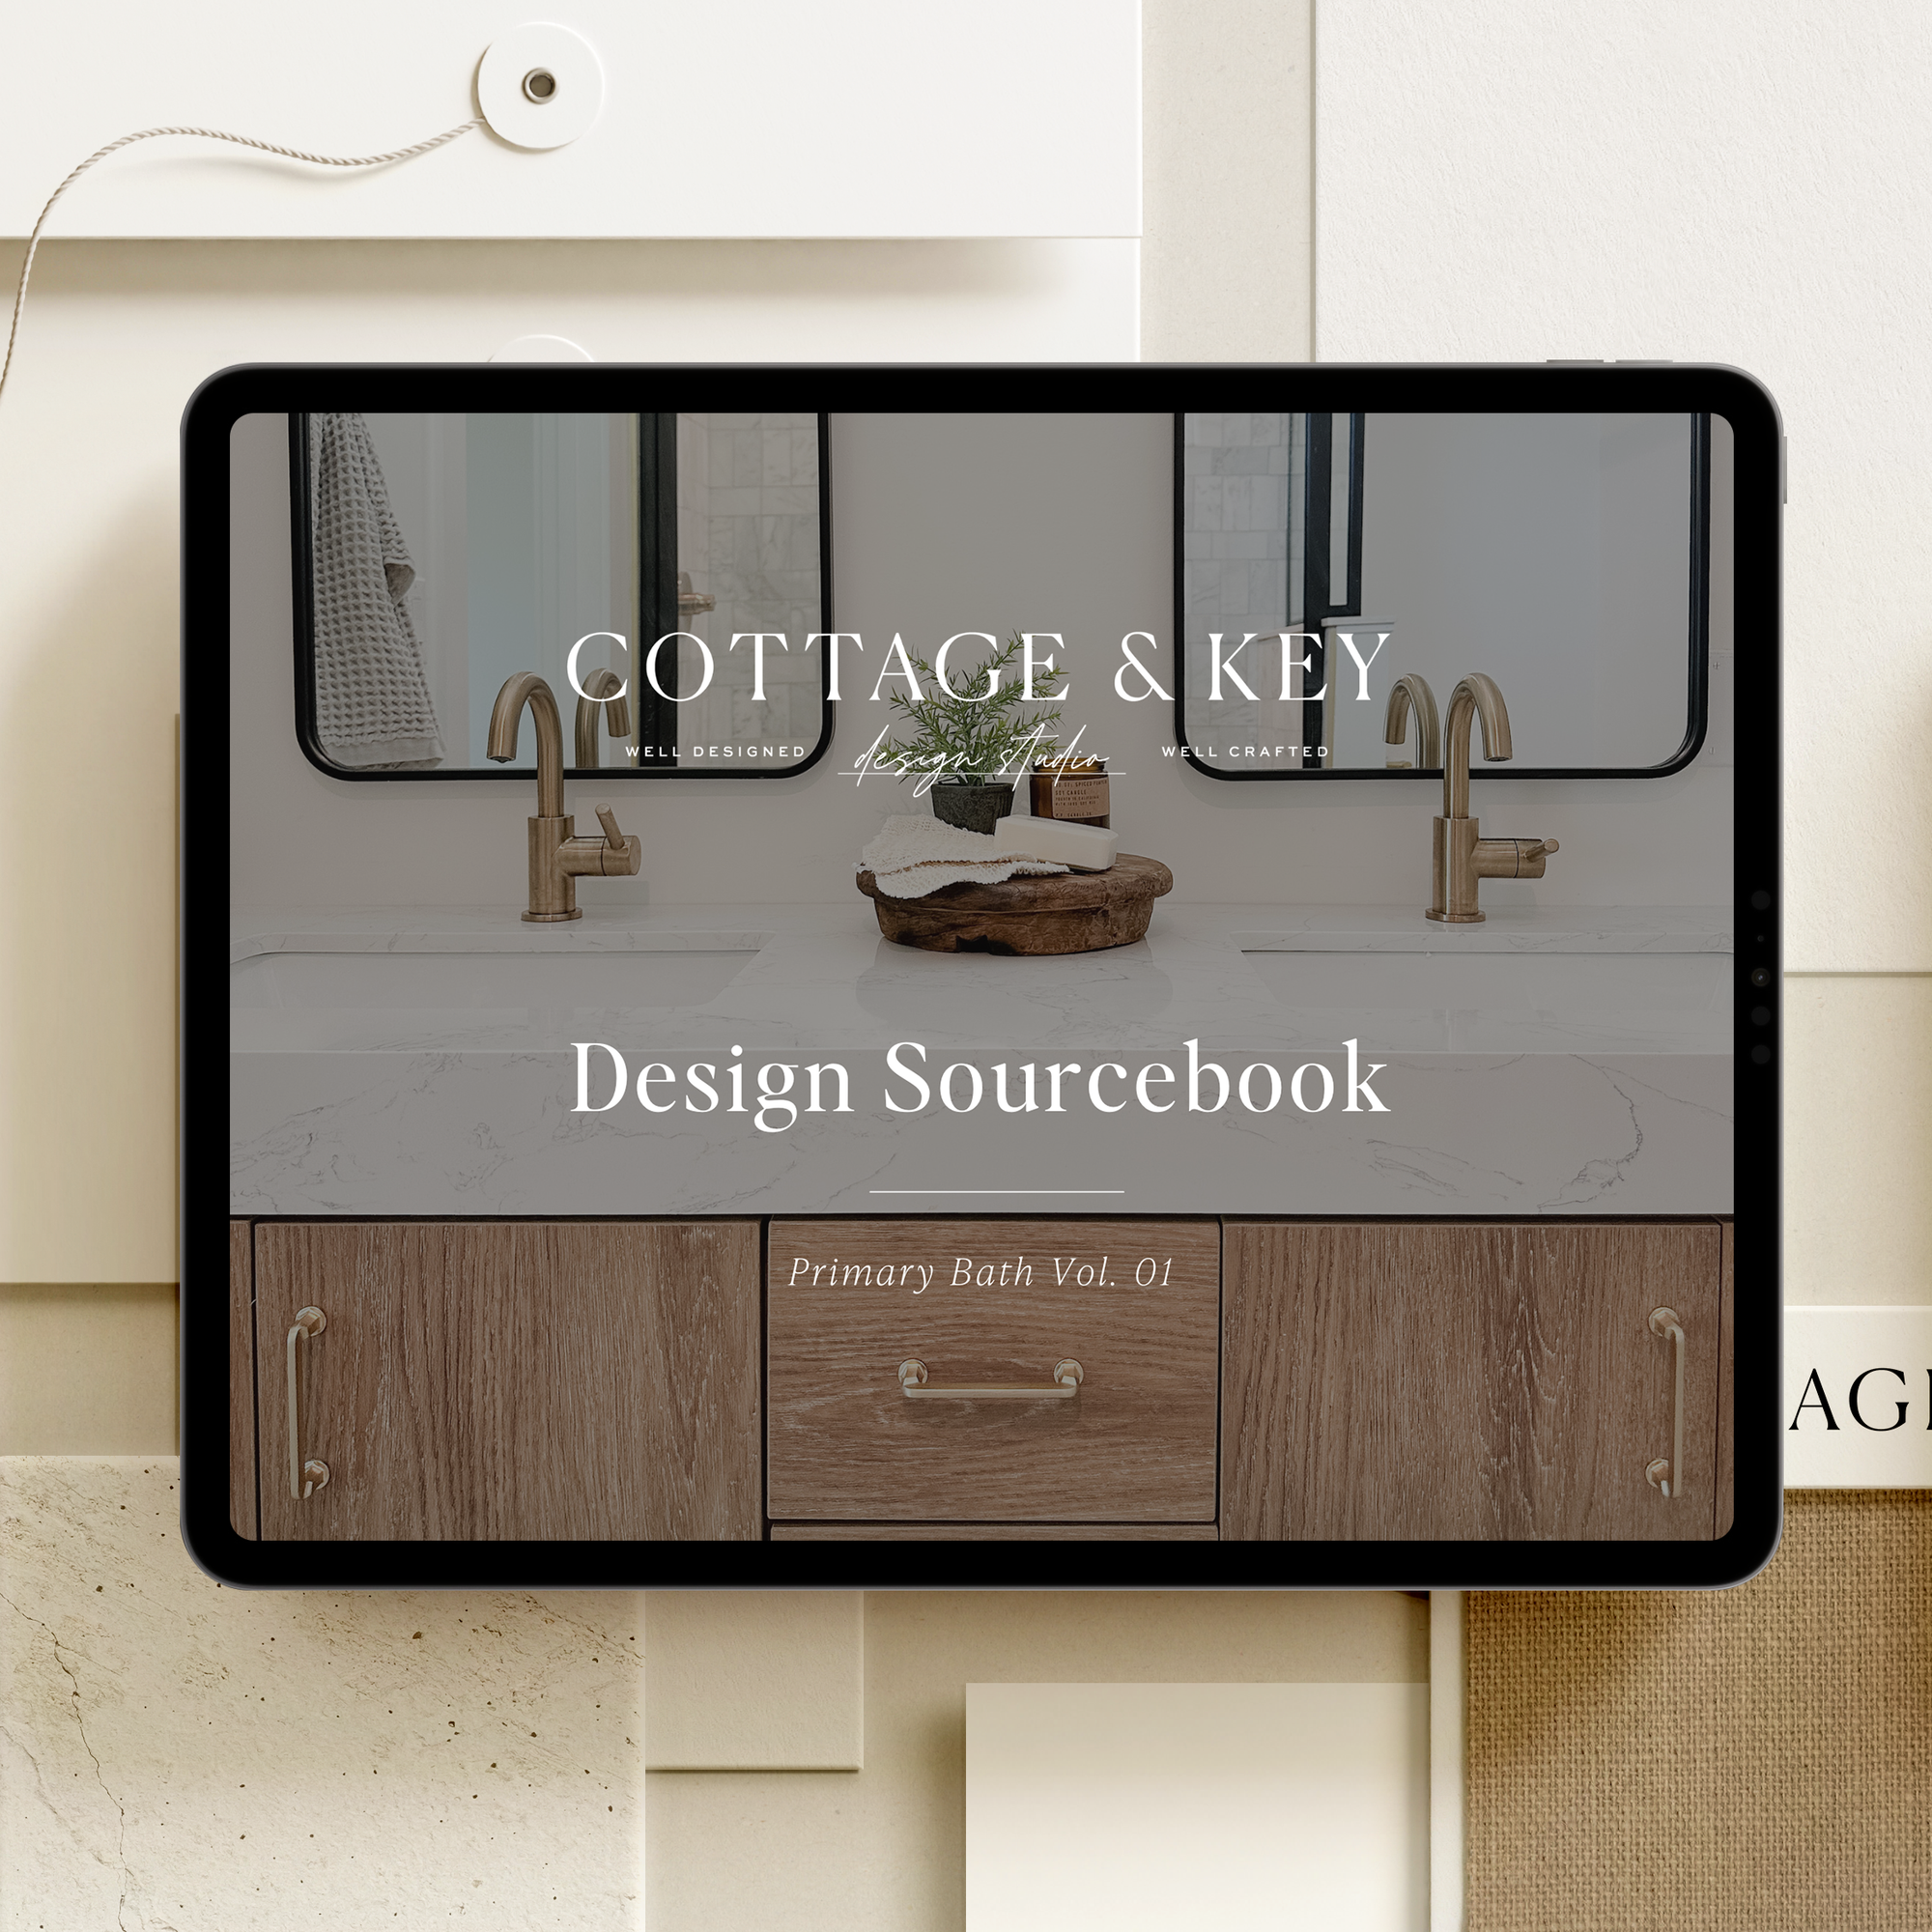 Design Sourcebook: Primary Bath Vol. 01